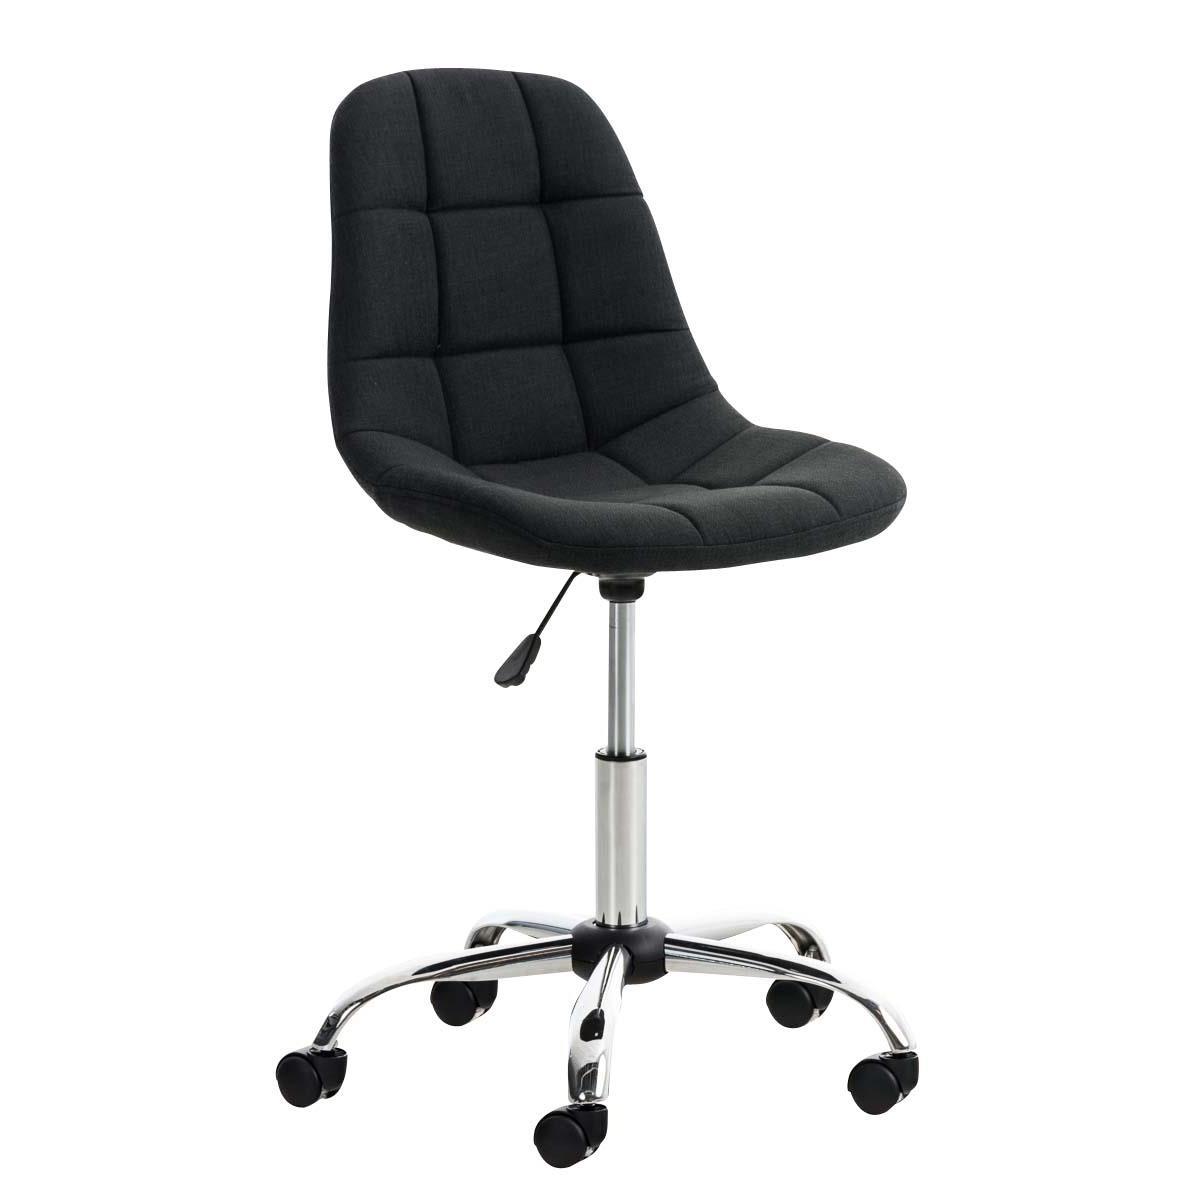 Chaise de bureau EMILY, Structure métallique, Design exclusif, revêtement Tissu, Noir